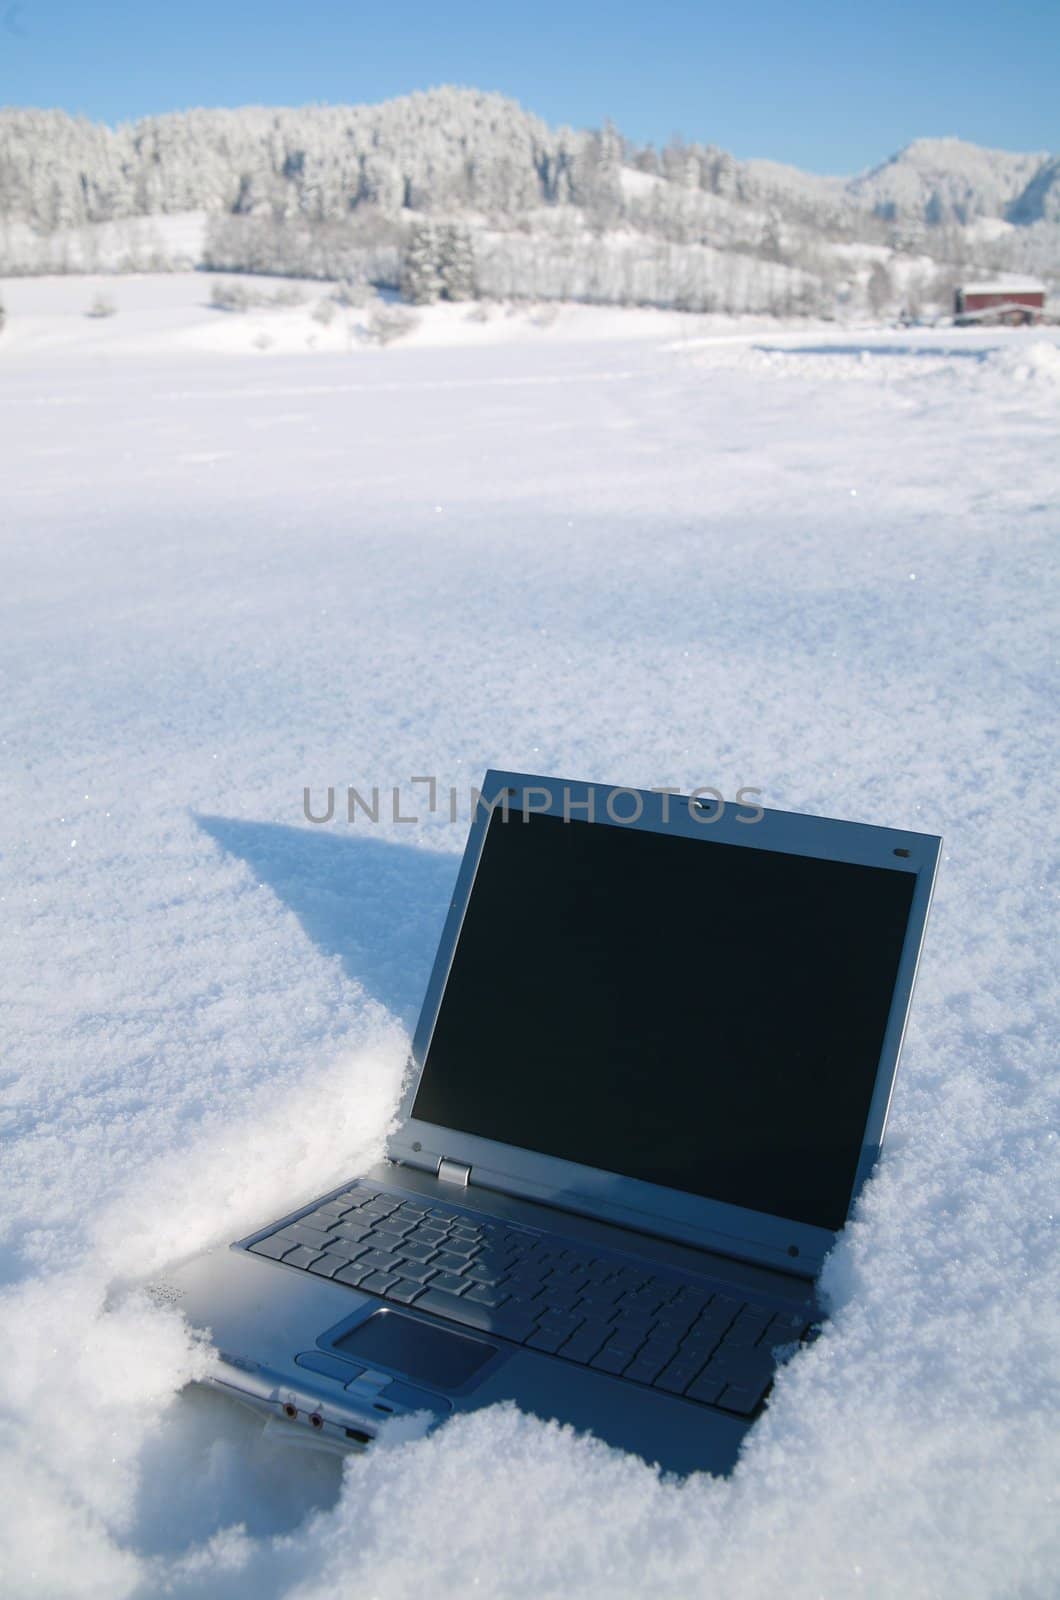 Laptop in a snowy winter landscape scene